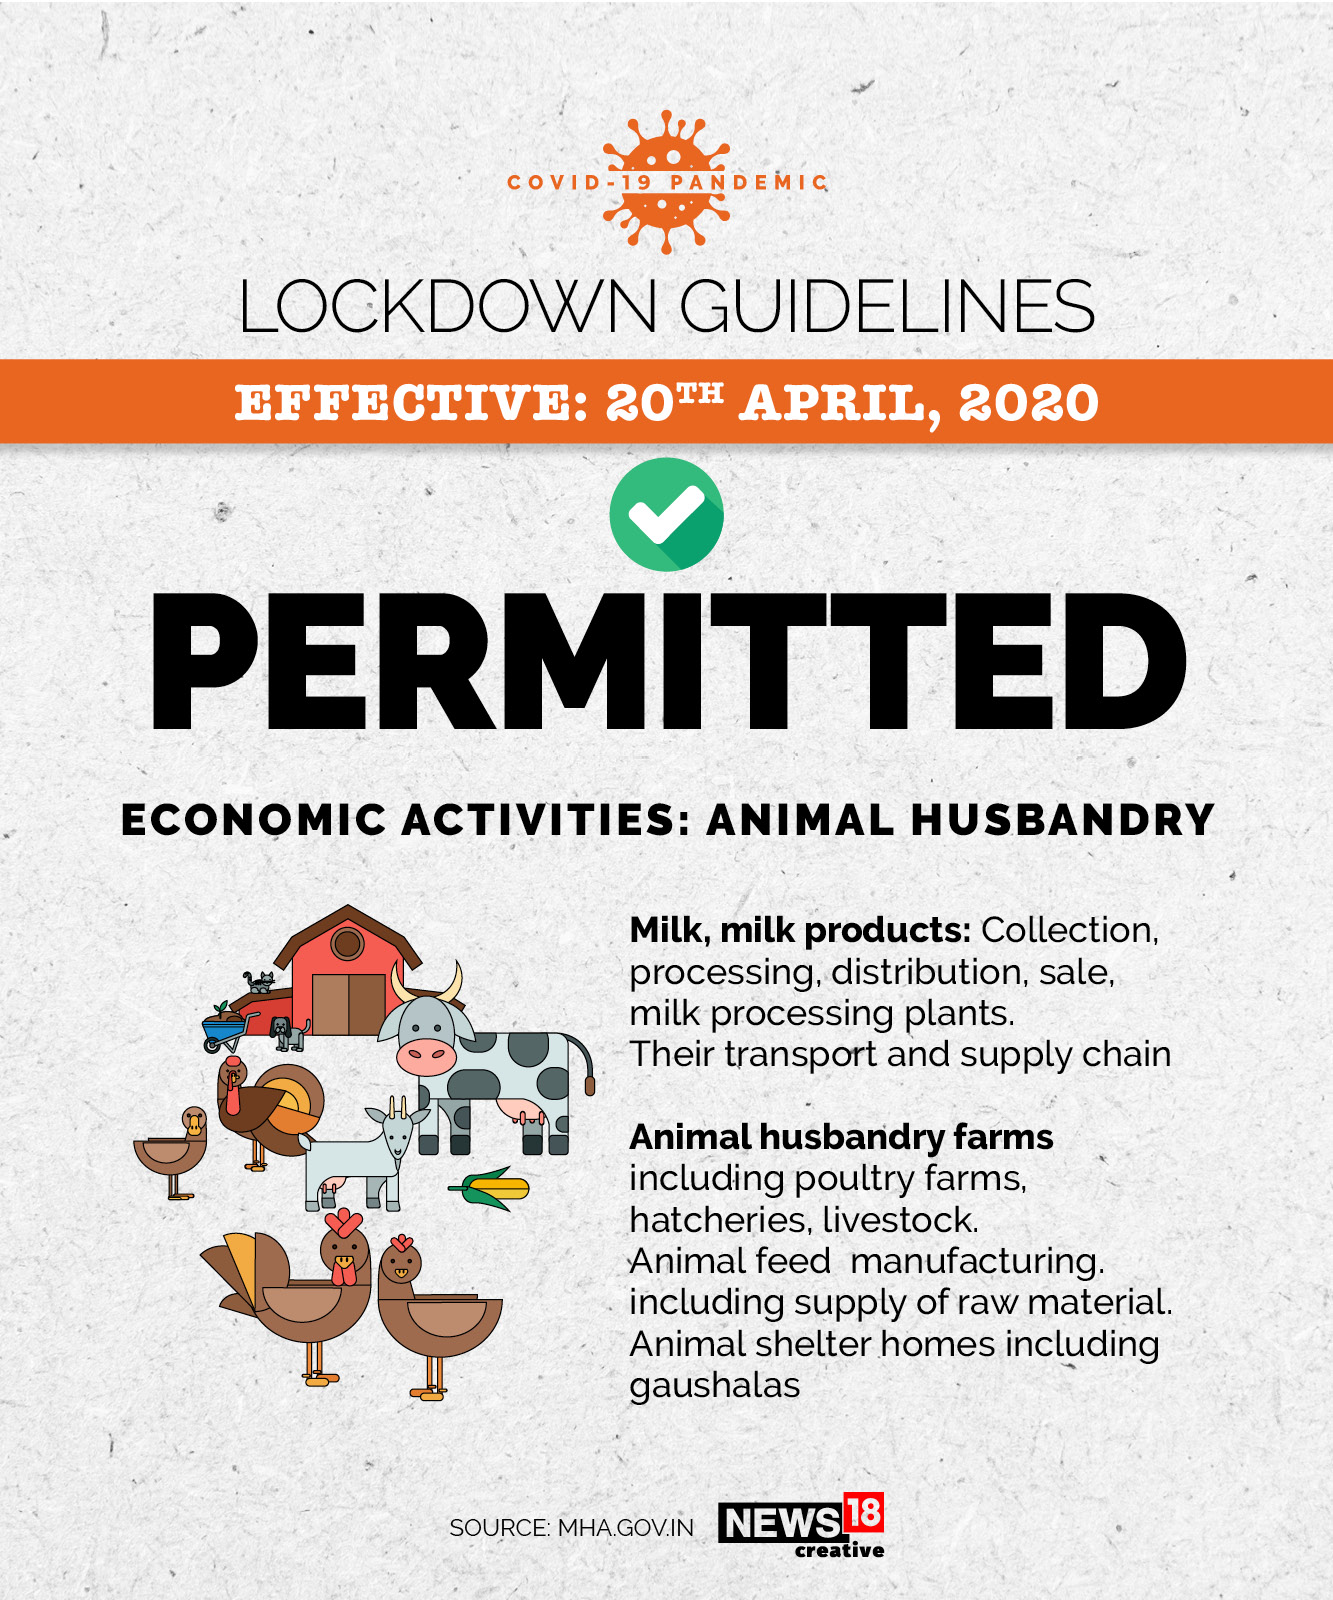 توییتر \ Forbes India در توییتر: «From animal husbandry to fisheries, and  more...here's what's permitted during the extended national lockdown in  India along with healthcare and agricultural activities #Lockdown2  #Covid19India #IndiaLockdown ...